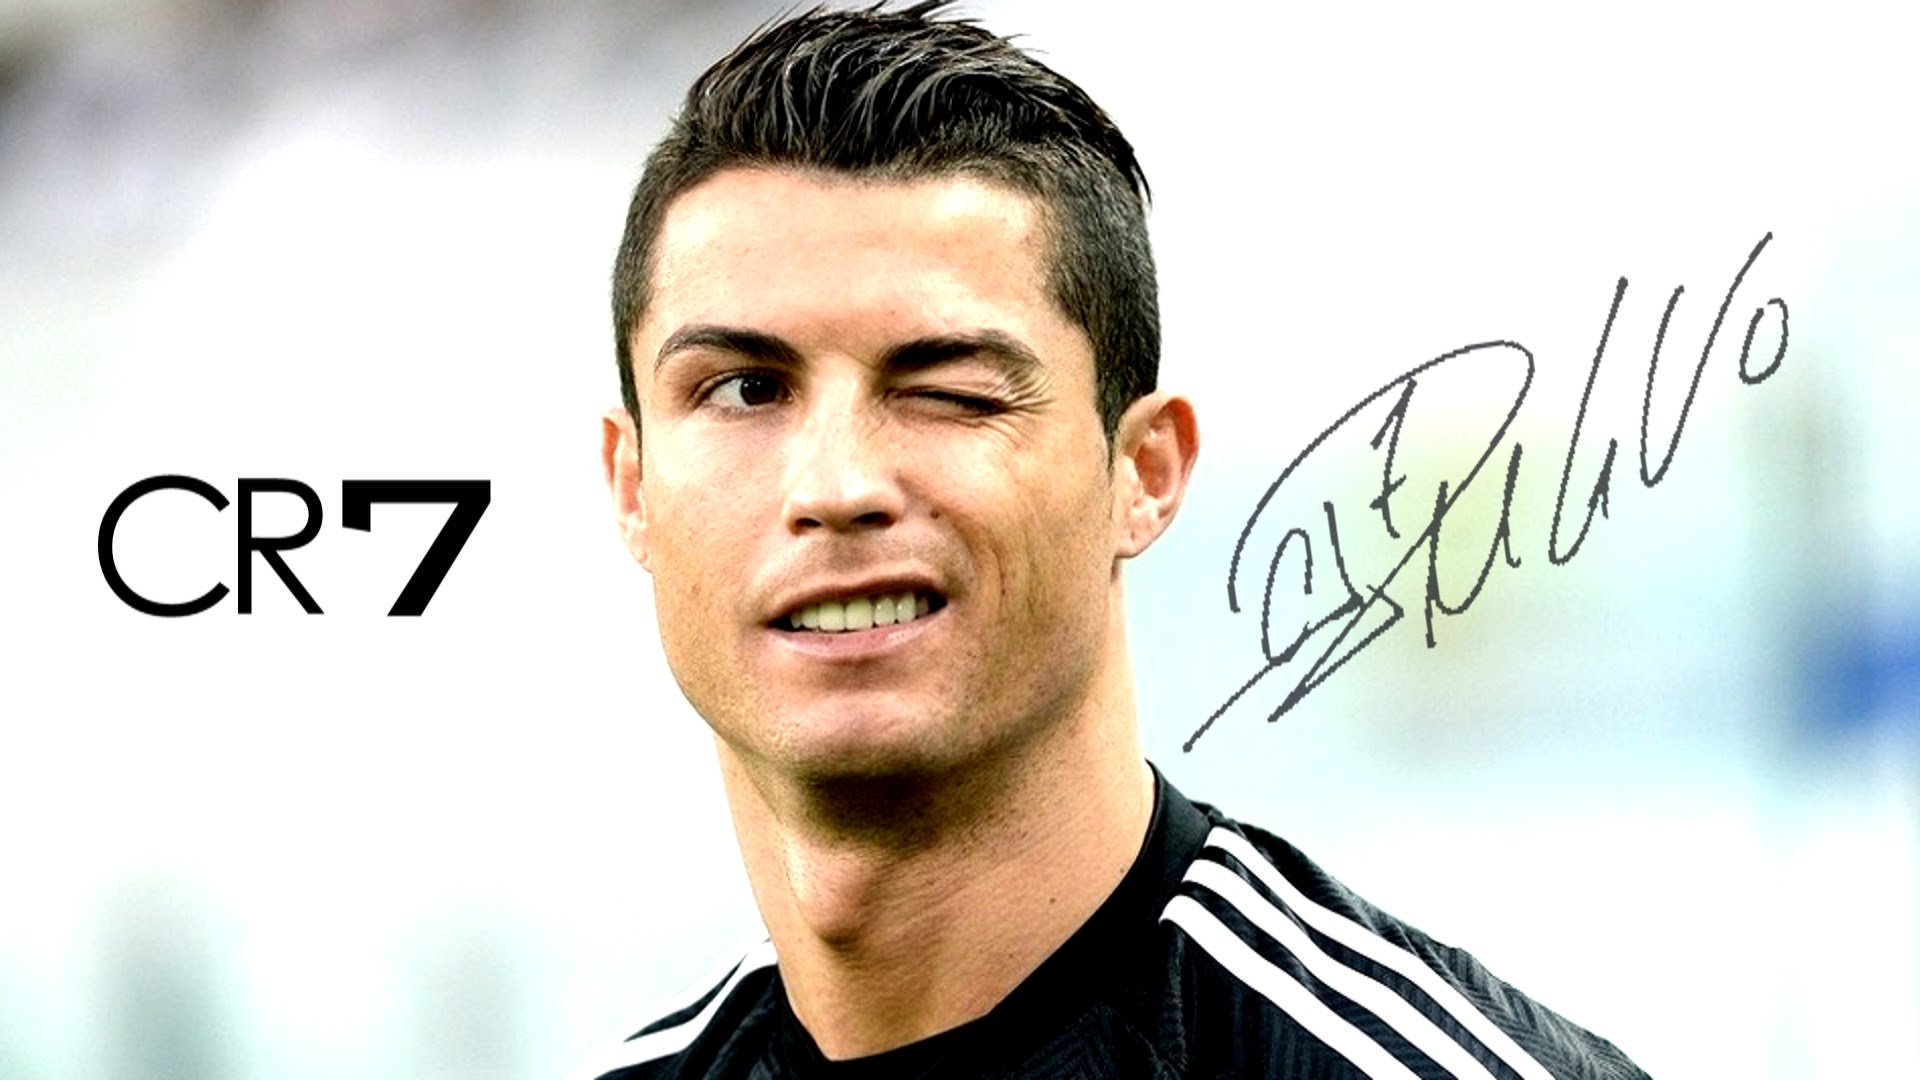 De Cristiano Ronaldo 2017 - HD Wallpaper 